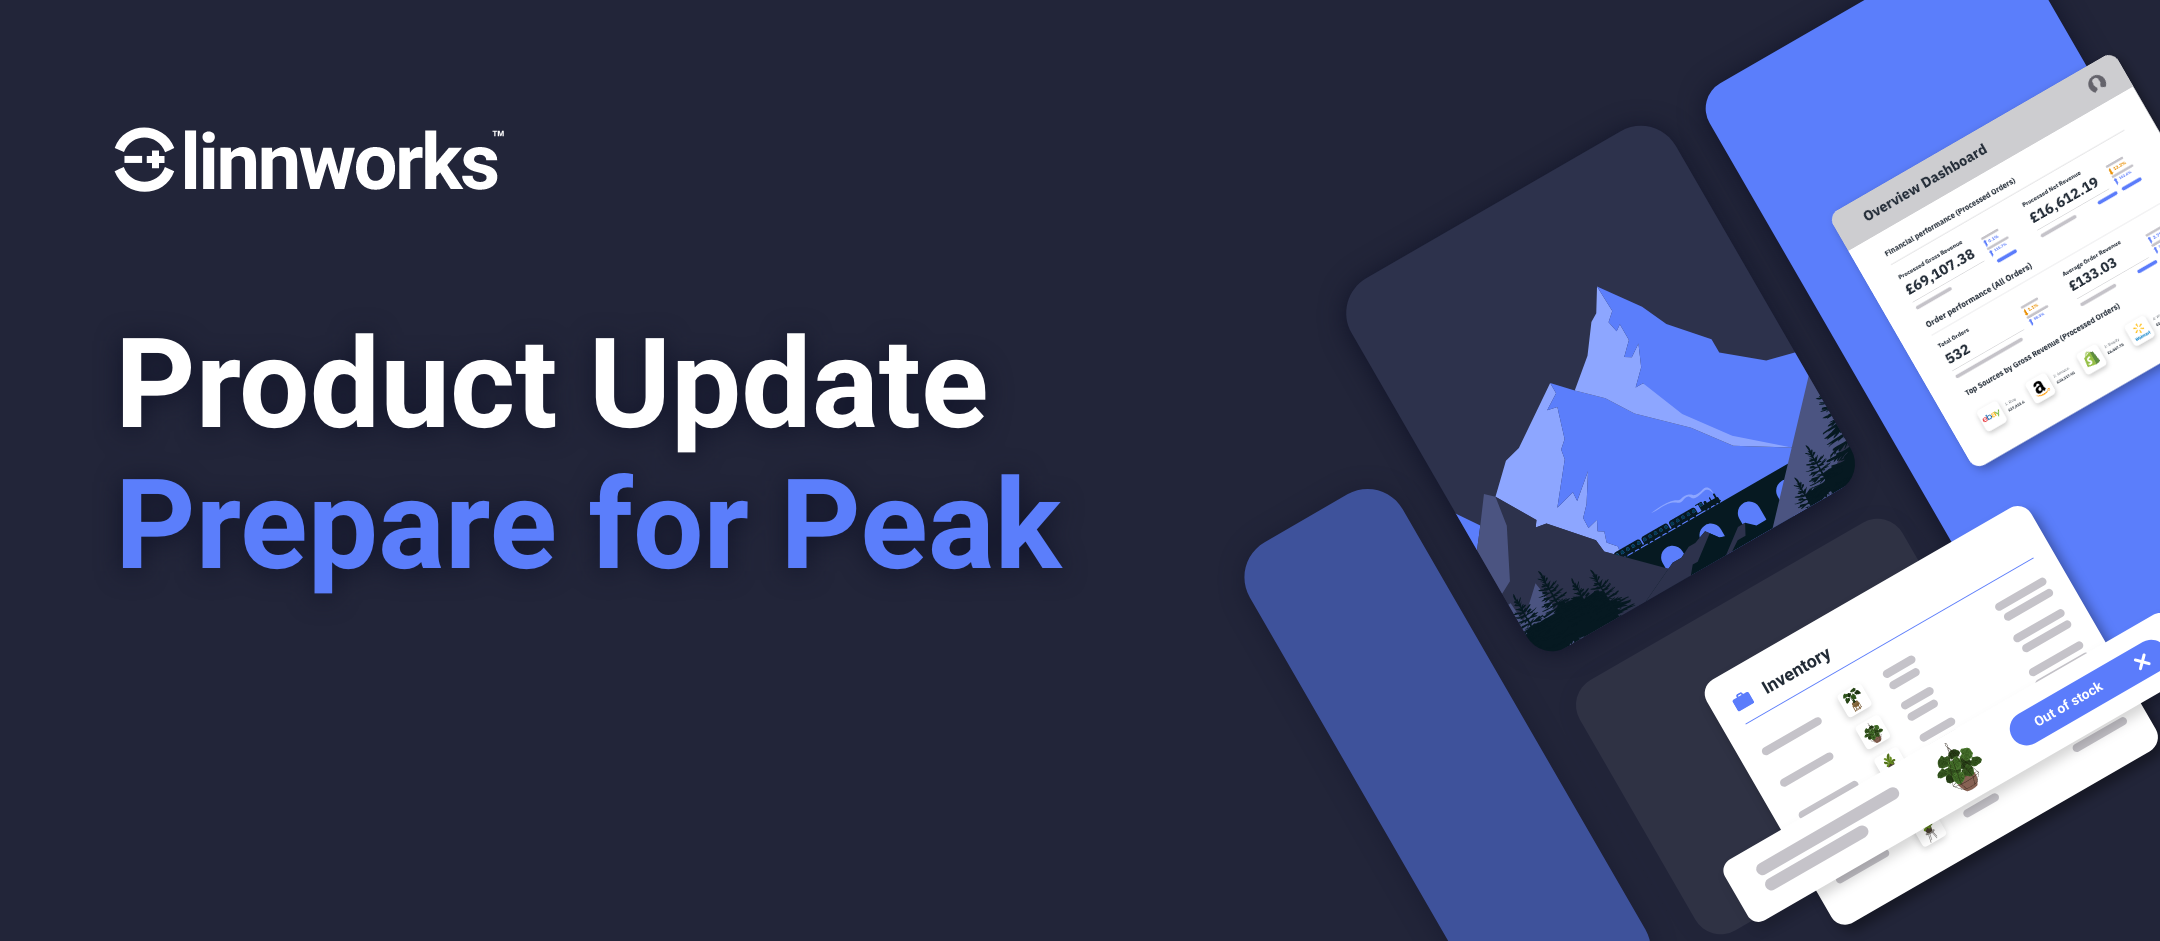 Product update
Prepare for Peak